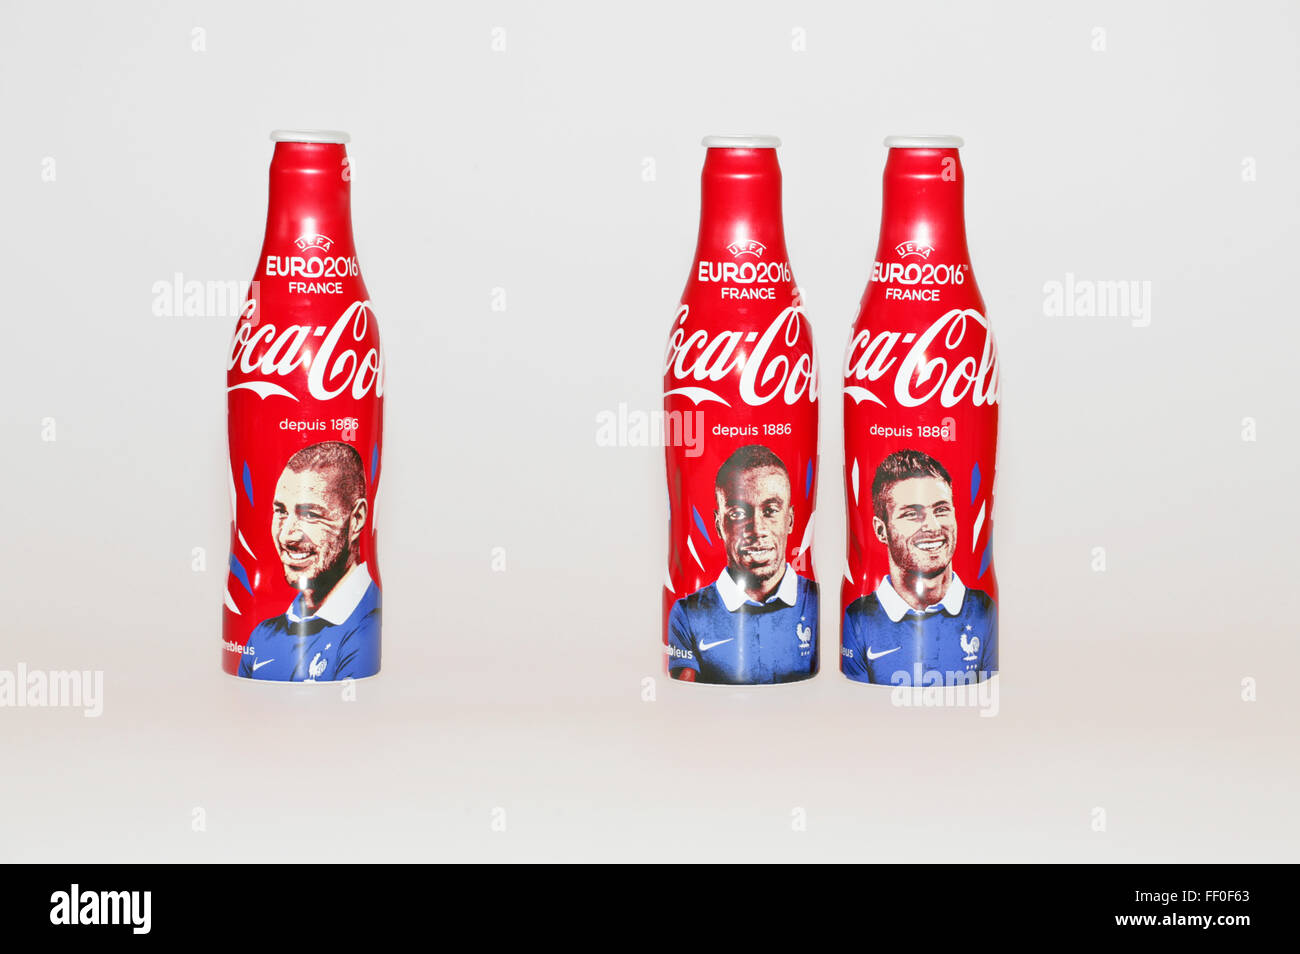 Coca Cola Flaschen limitierte Euro 2016 Fußball in Frankreich  Stockfotografie - Alamy